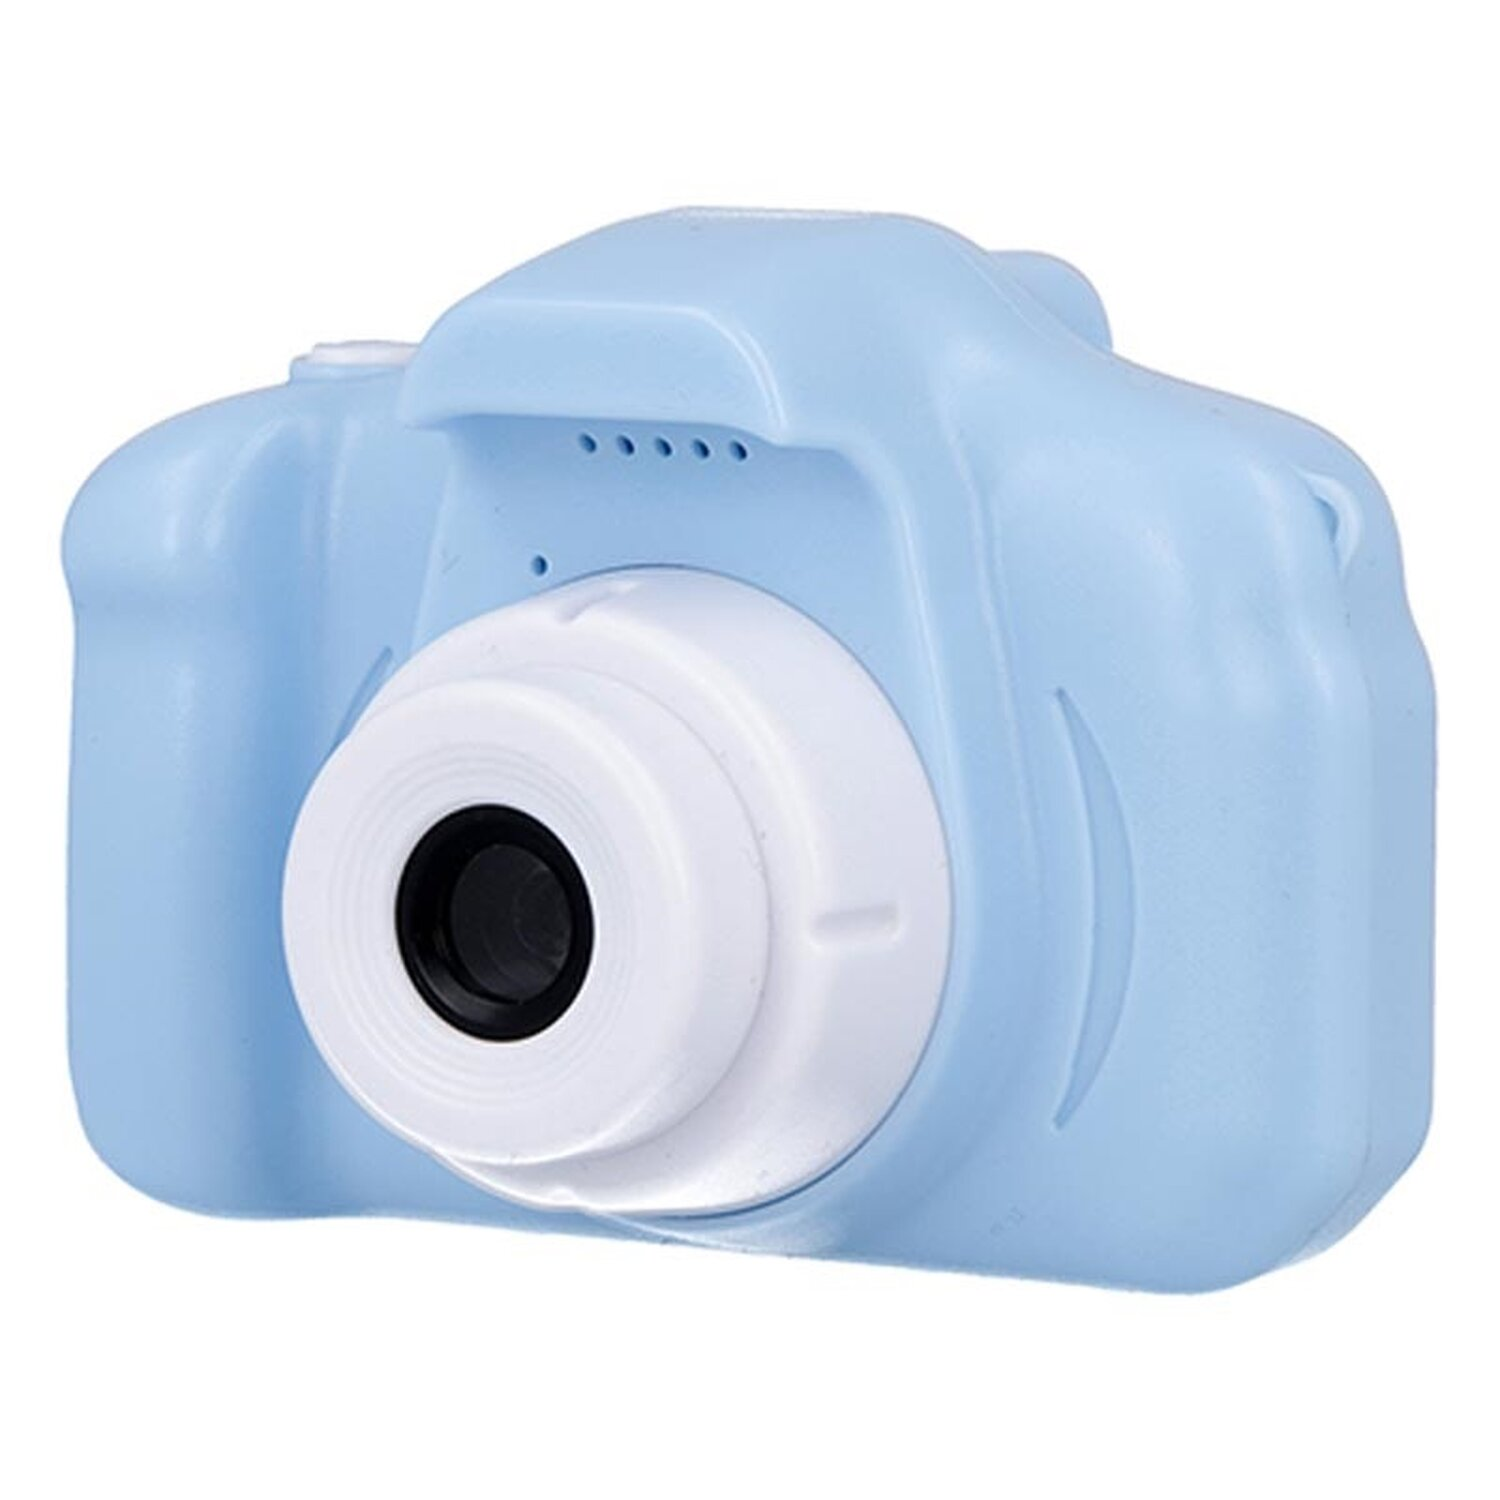 Blau SKC-100 Digitalkamera FOREVER